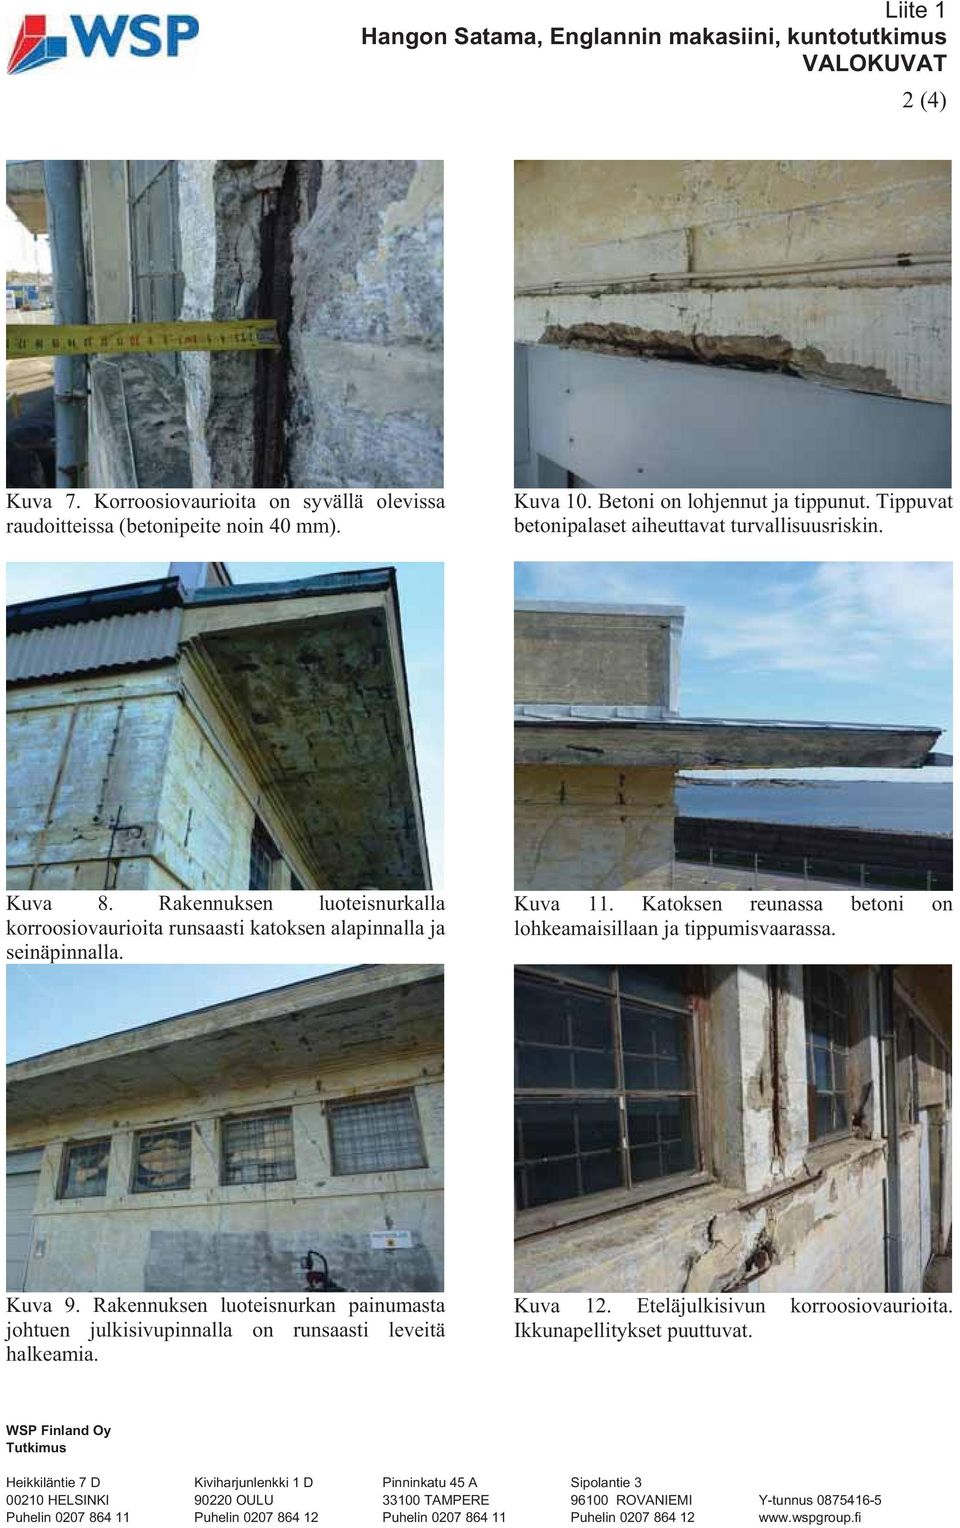 Kuva 11. Katoksen reunassa betoni on lohkeamaisillaan ja tippumisvaarassa. Kuva 9. Rakennuksen luoteisnurkan painumasta johtuen julkisivupinnalla on runsaasti leveitä halkeamia. Kuva 12.